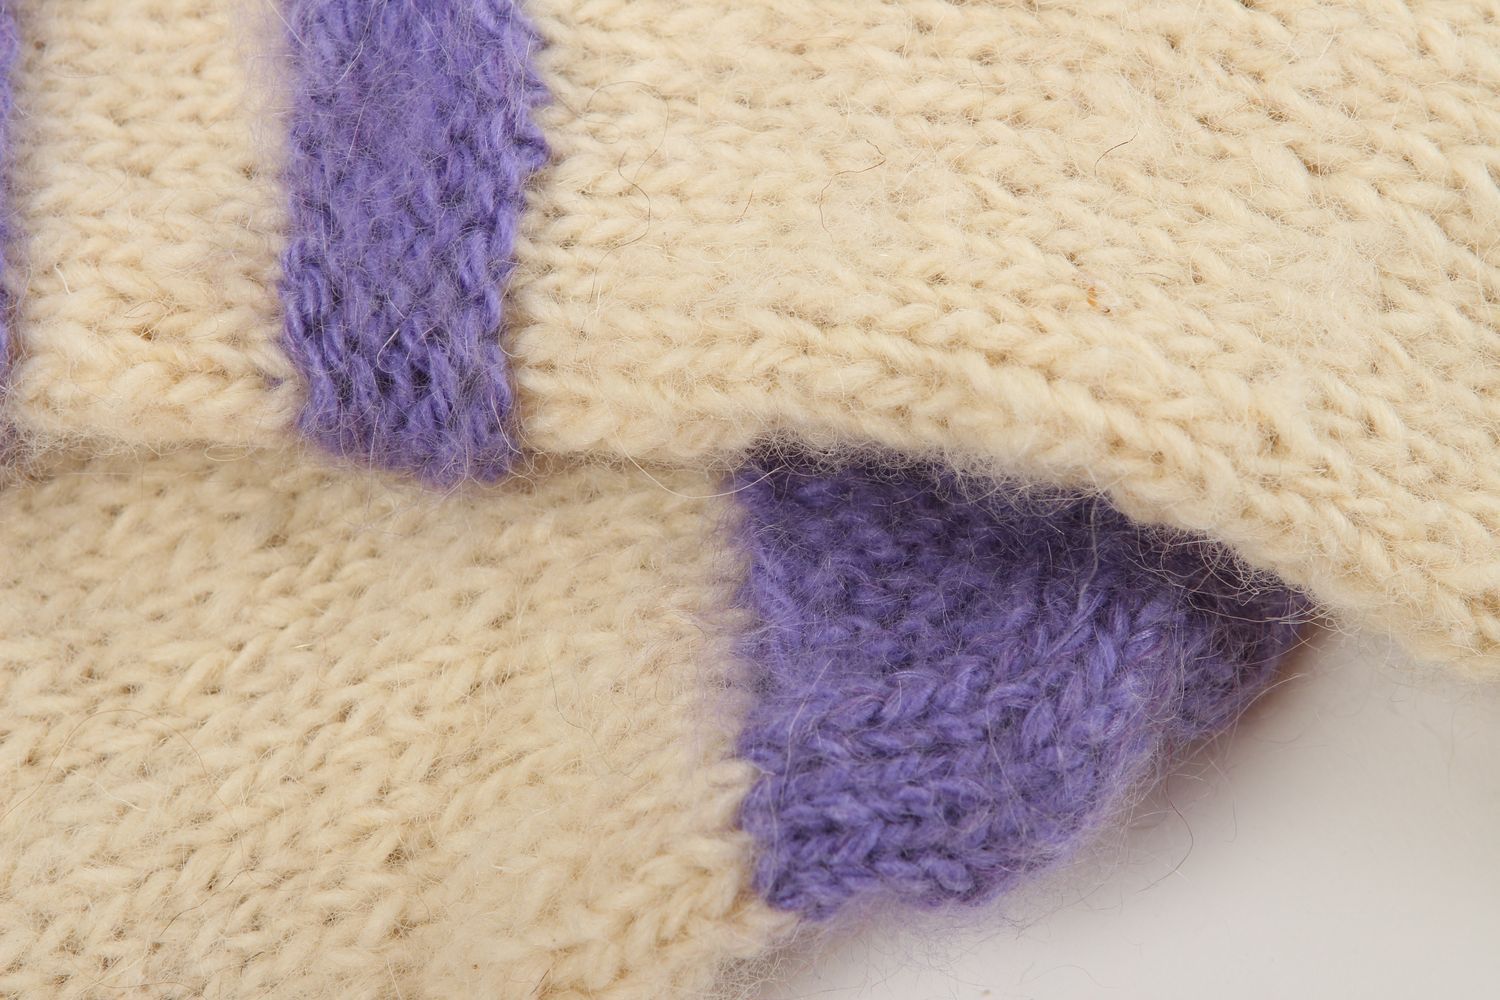 Handmade warm socks wool socks knitted socks for women winter clothing photo 4